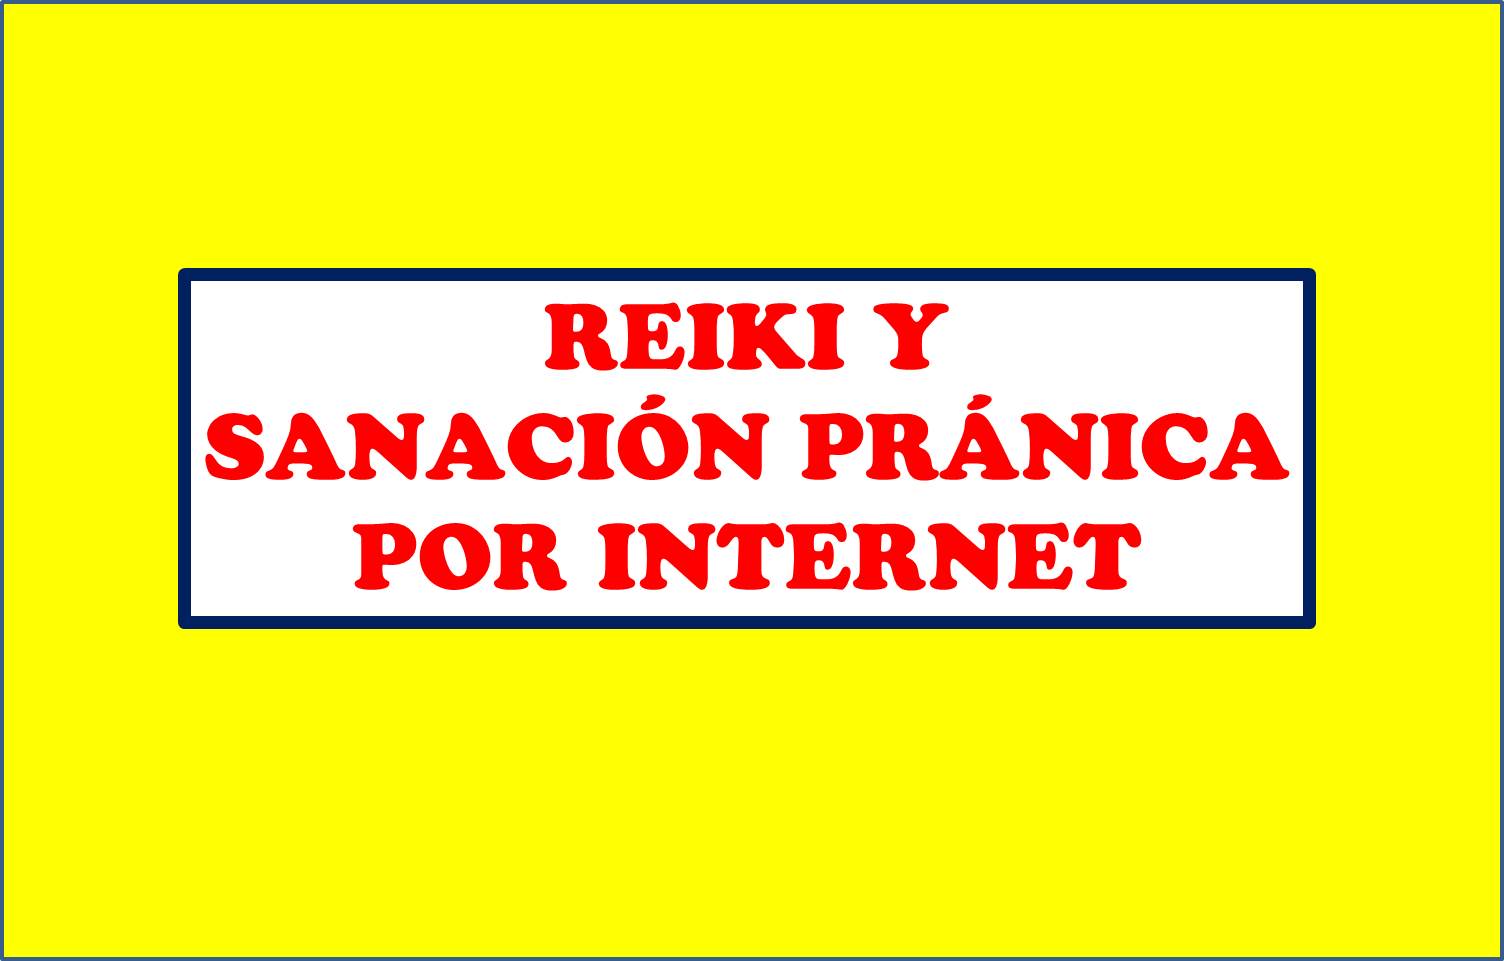 REIKI Y SANACIÓN PRÁNICA POR INTERNET